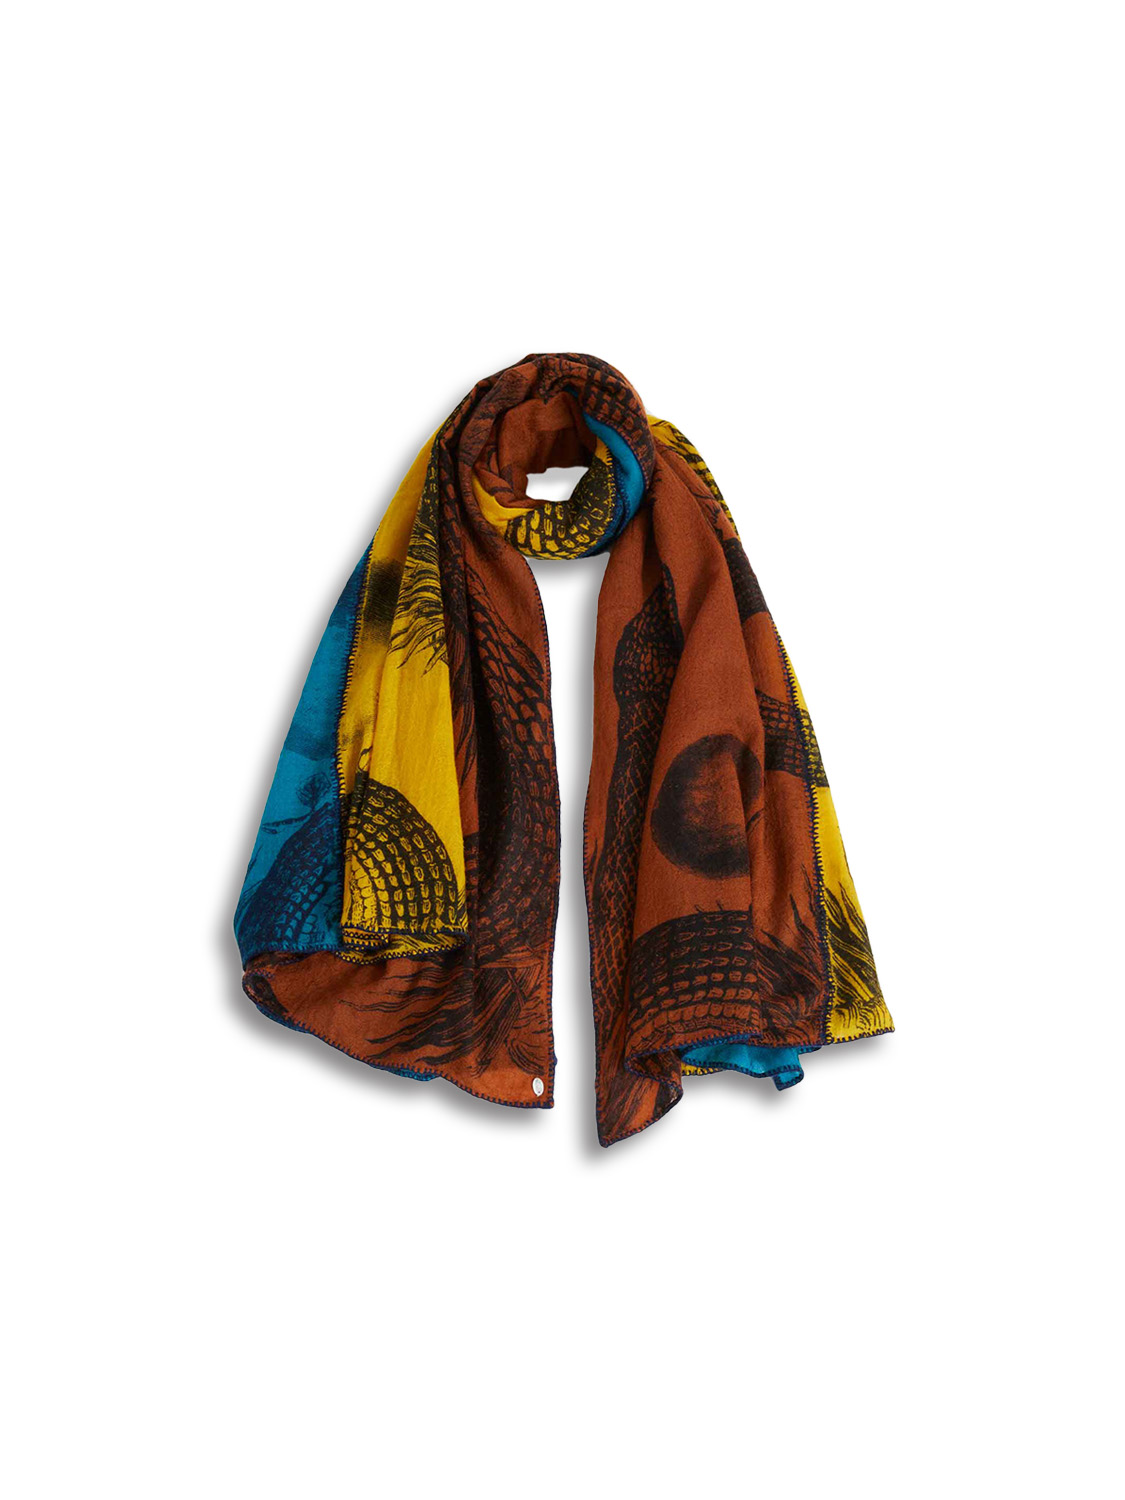 Scarf Patch Garden Eden - Cashmere scarf with print design